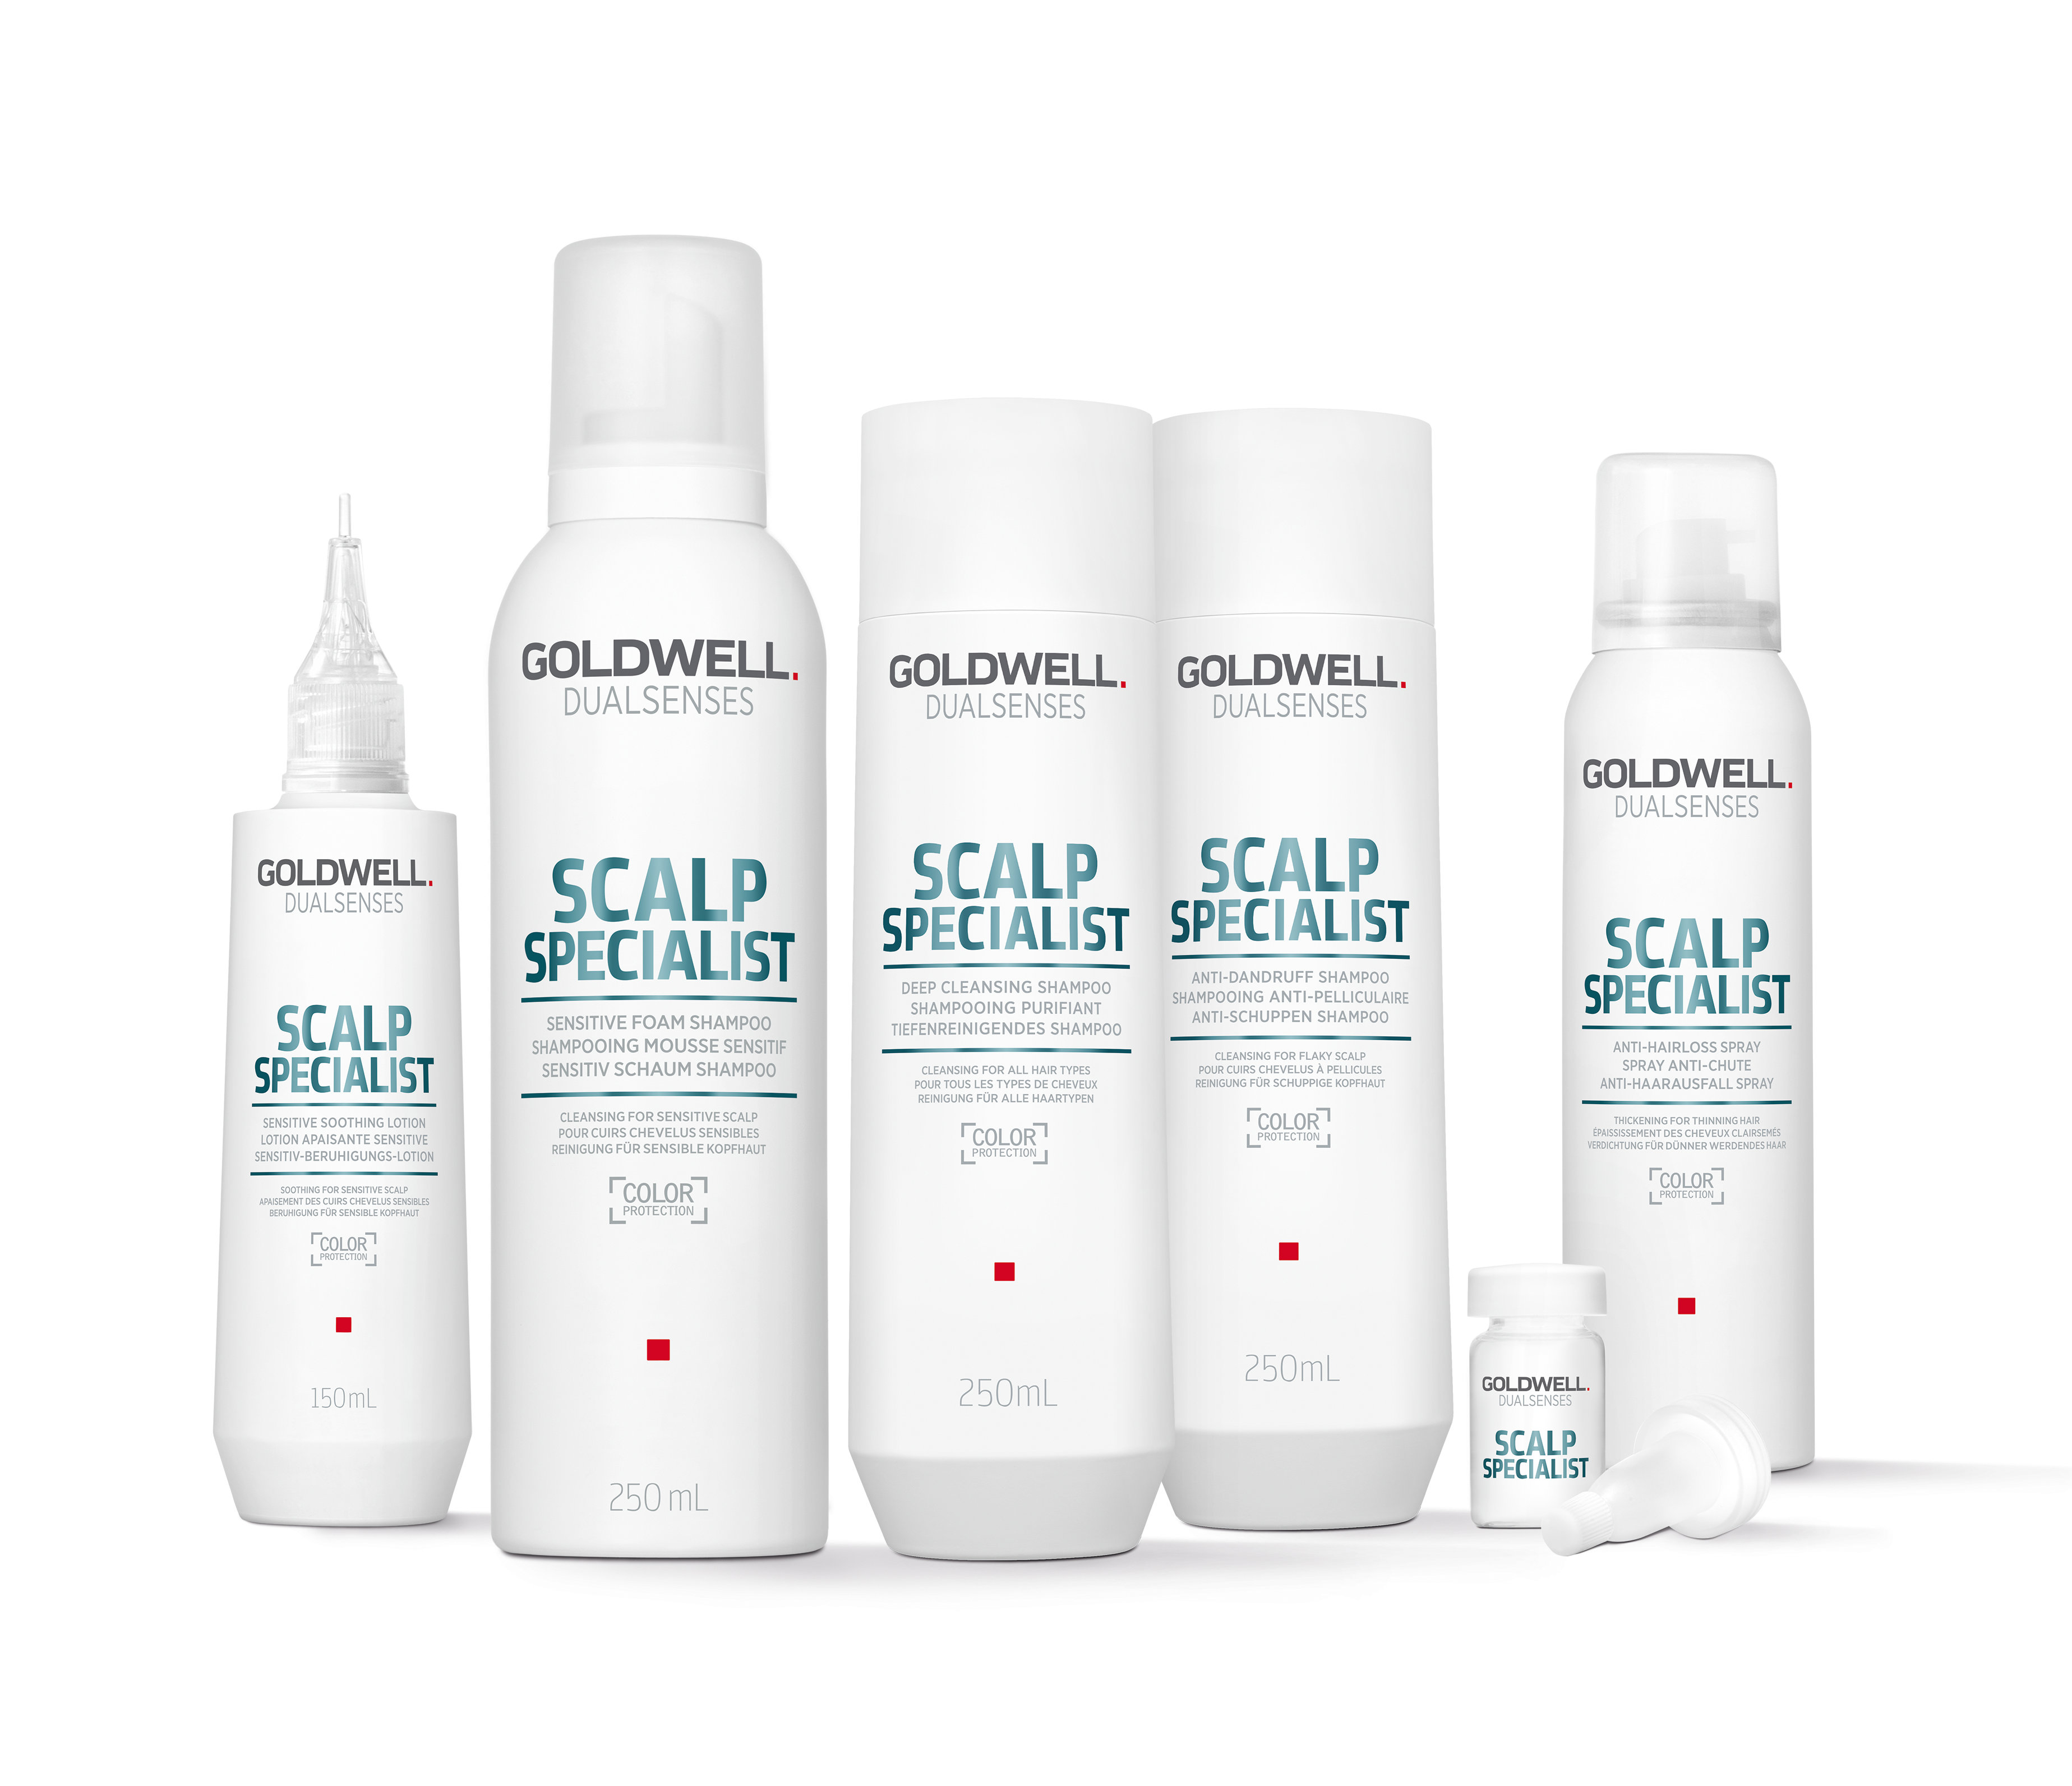 Gоldwell scalp specialist для решения особых проблем волос и кожи головы